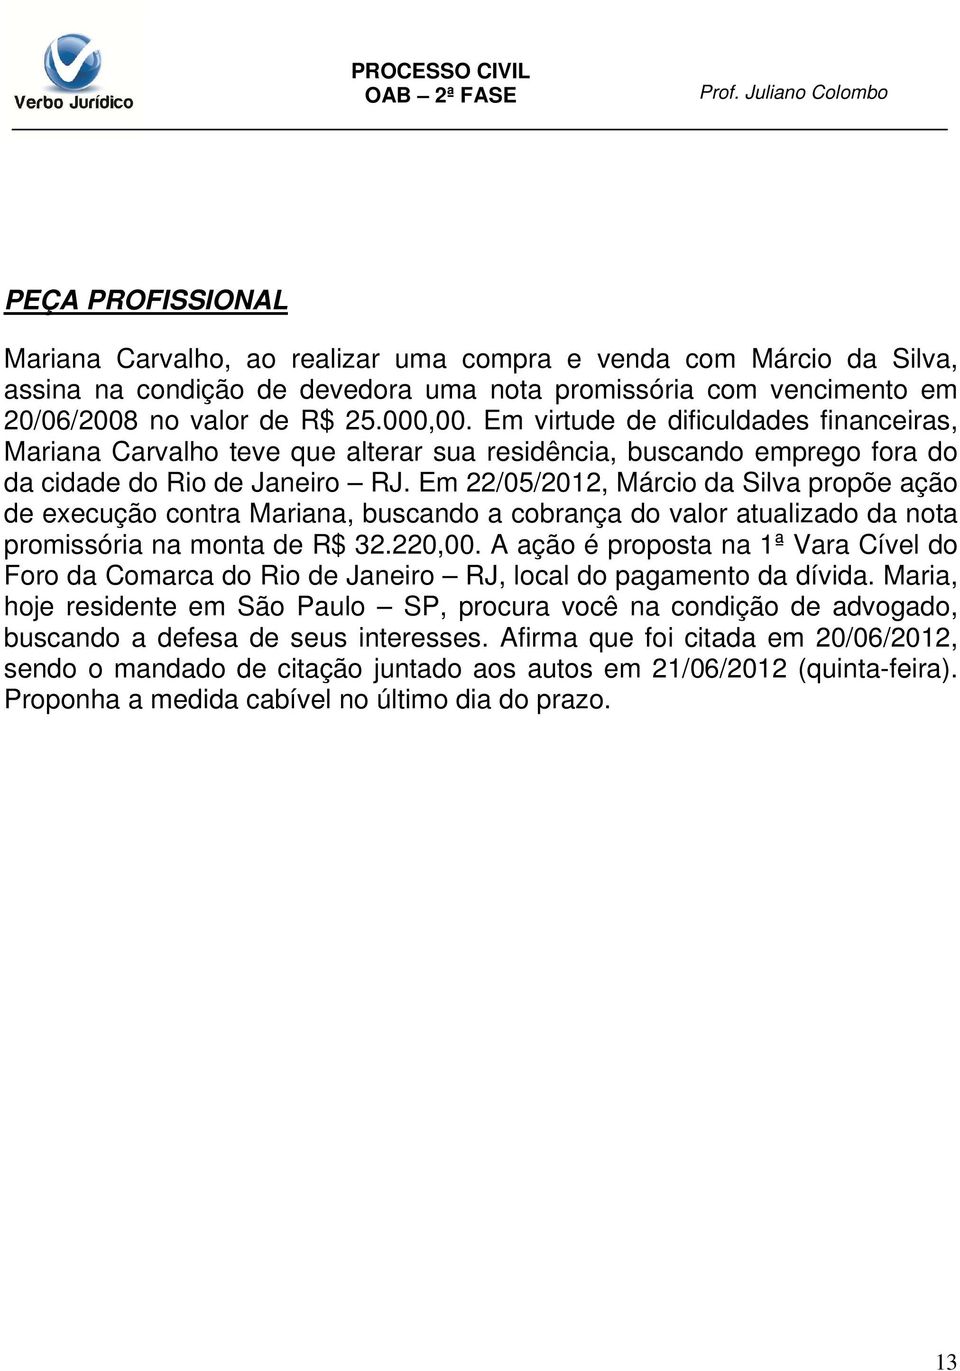 Em 22/05/2012, Márcio da Silva propõe ação de execução contra Mariana, buscando a cobrança do valor atualizado da nota promissória na monta de R$ 32.220,00.